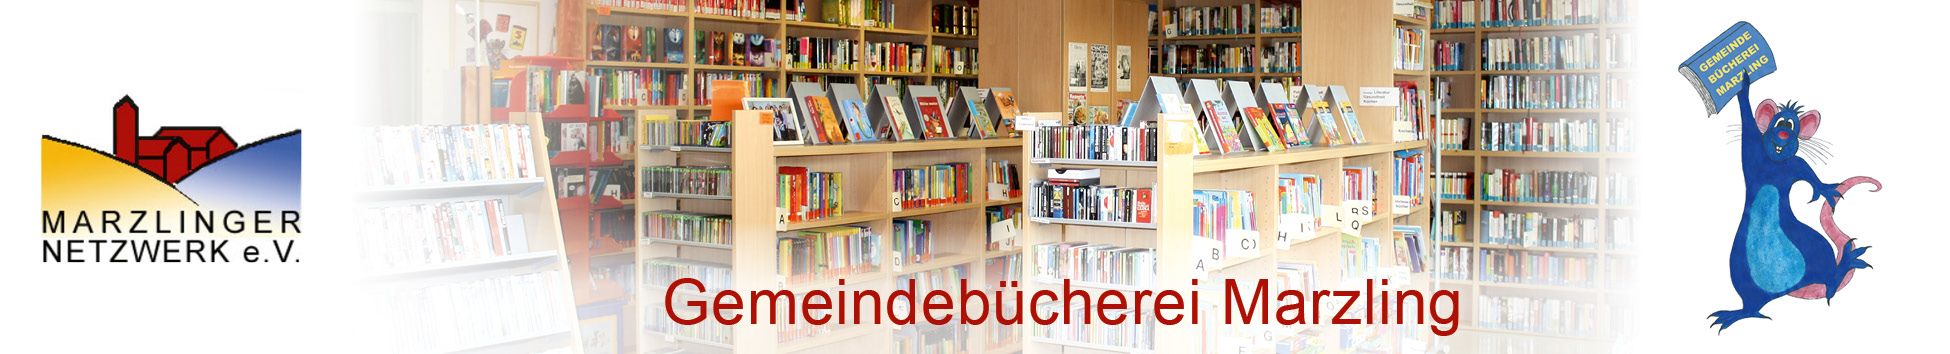 Gemeindebücherei Marzling